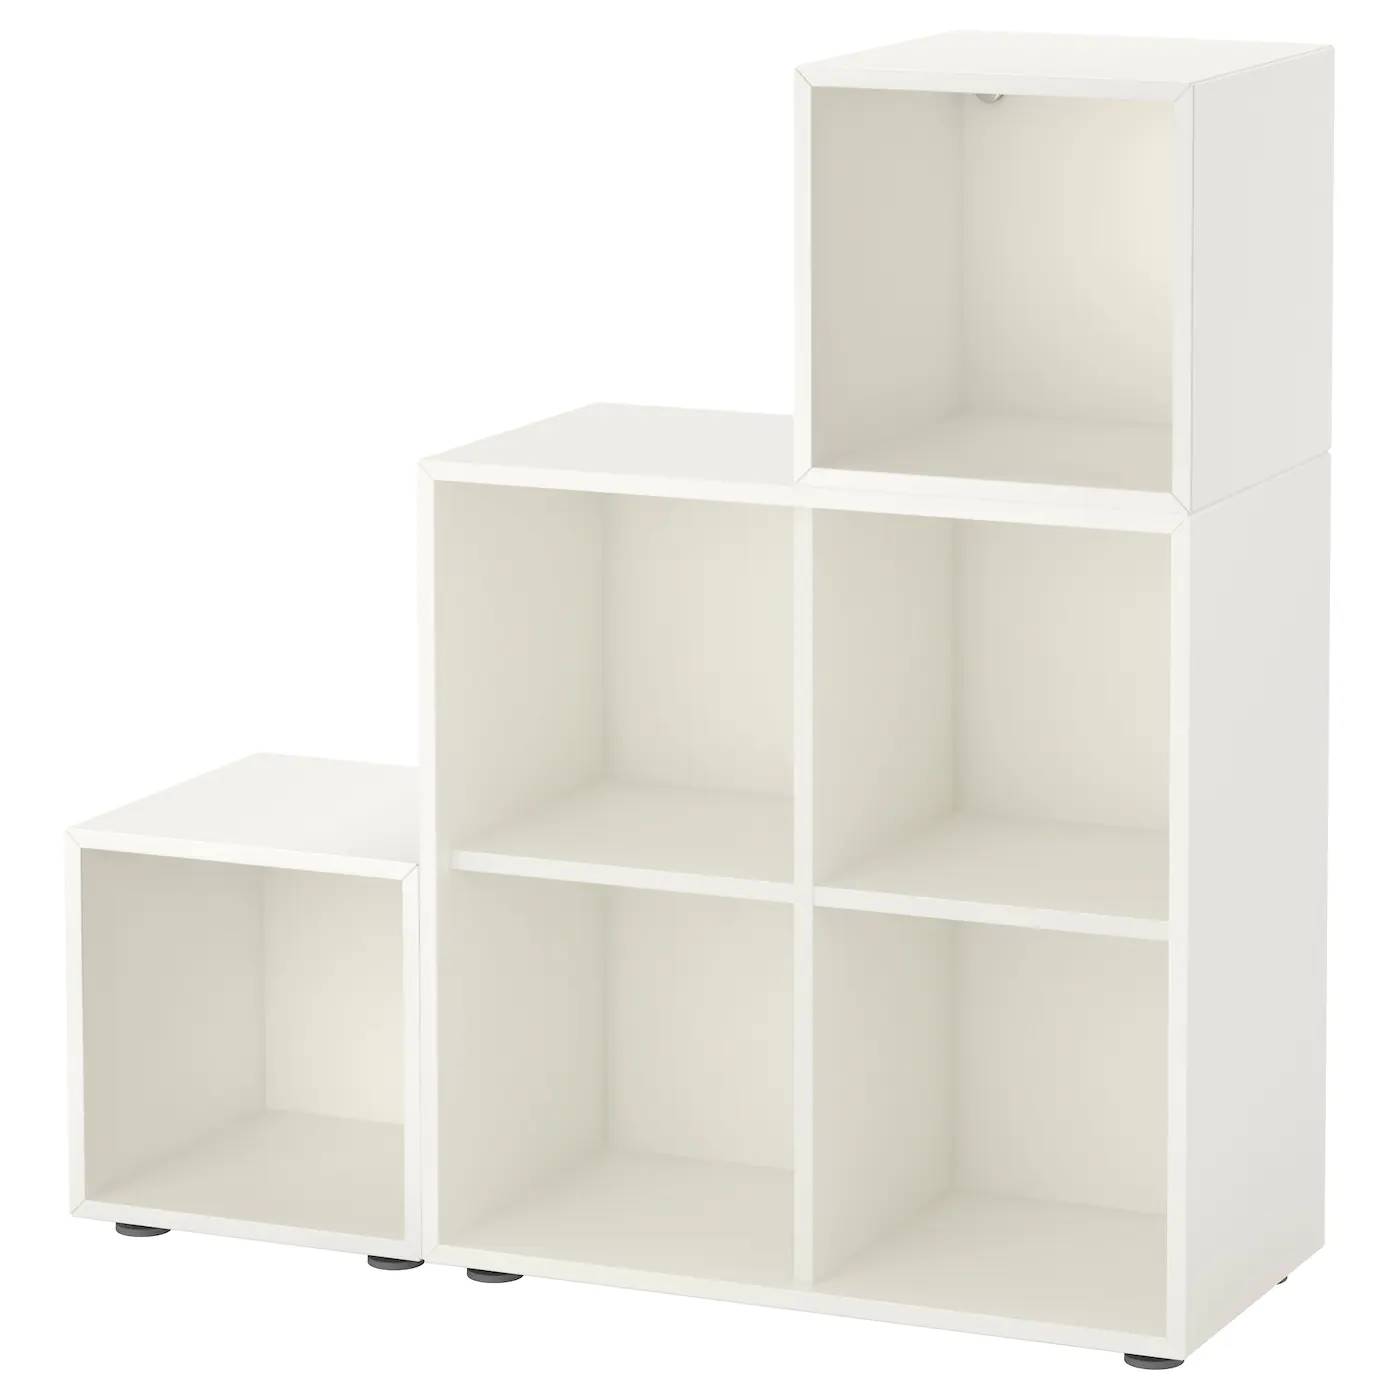 Estantería blanca modular EKET de IKEA